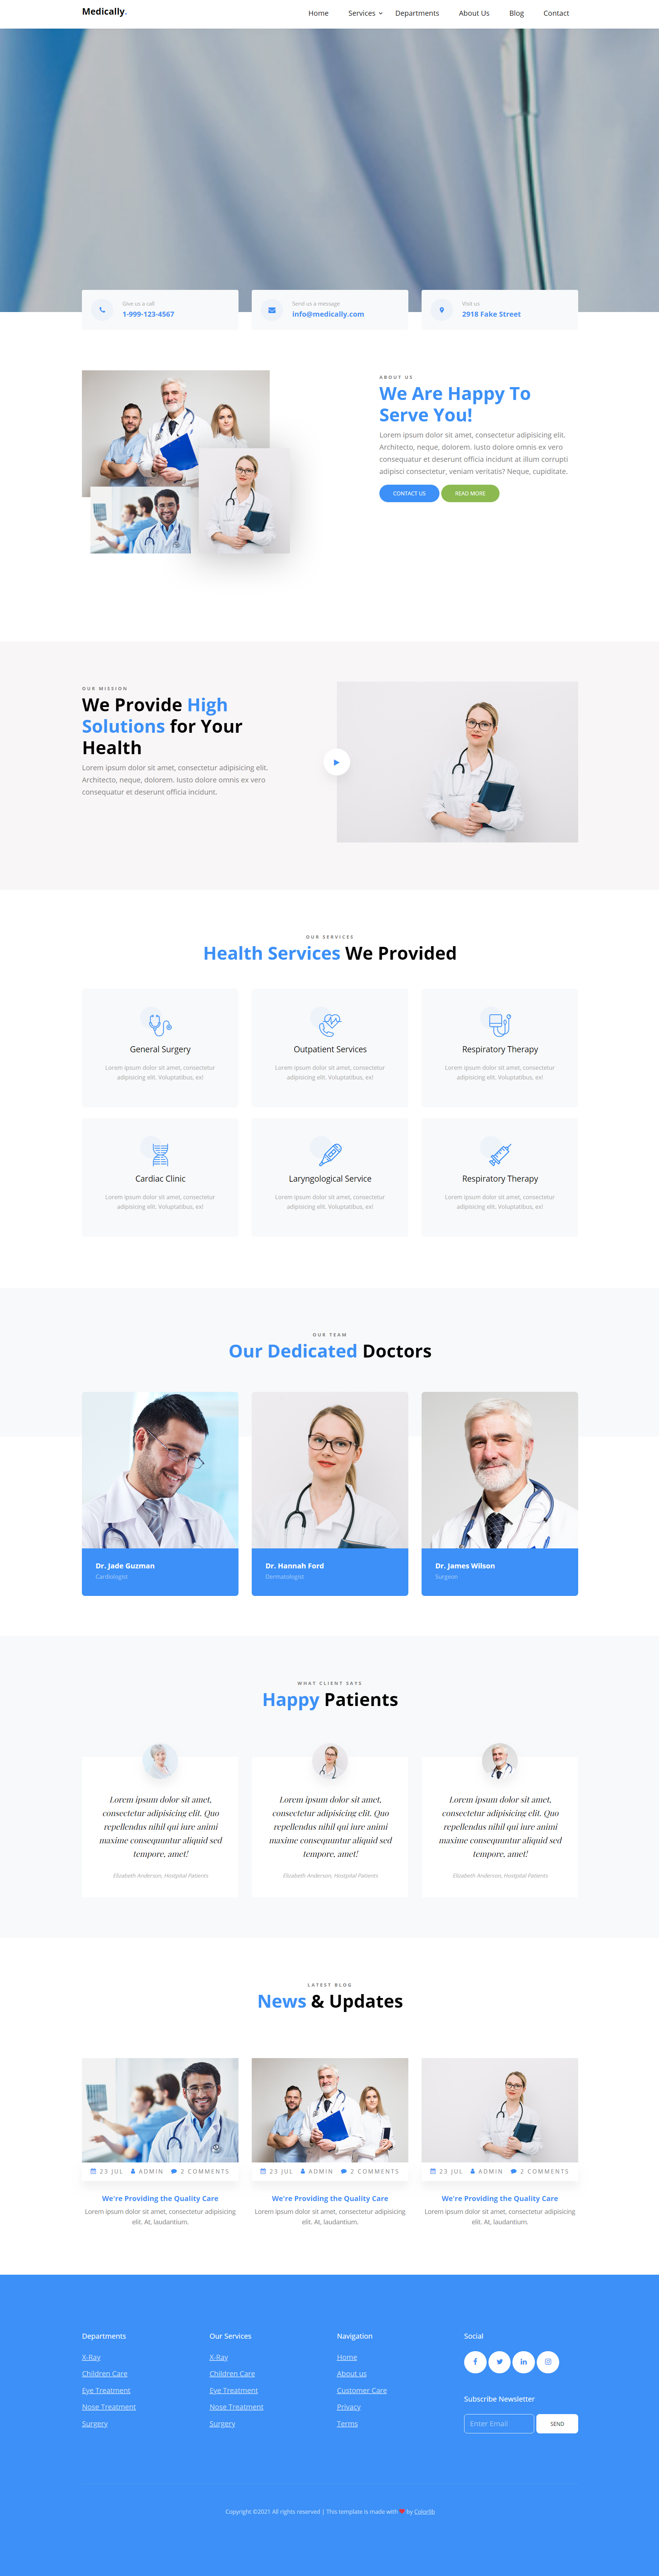 蓝色简洁风格响应式医疗专家展示企业网页模板